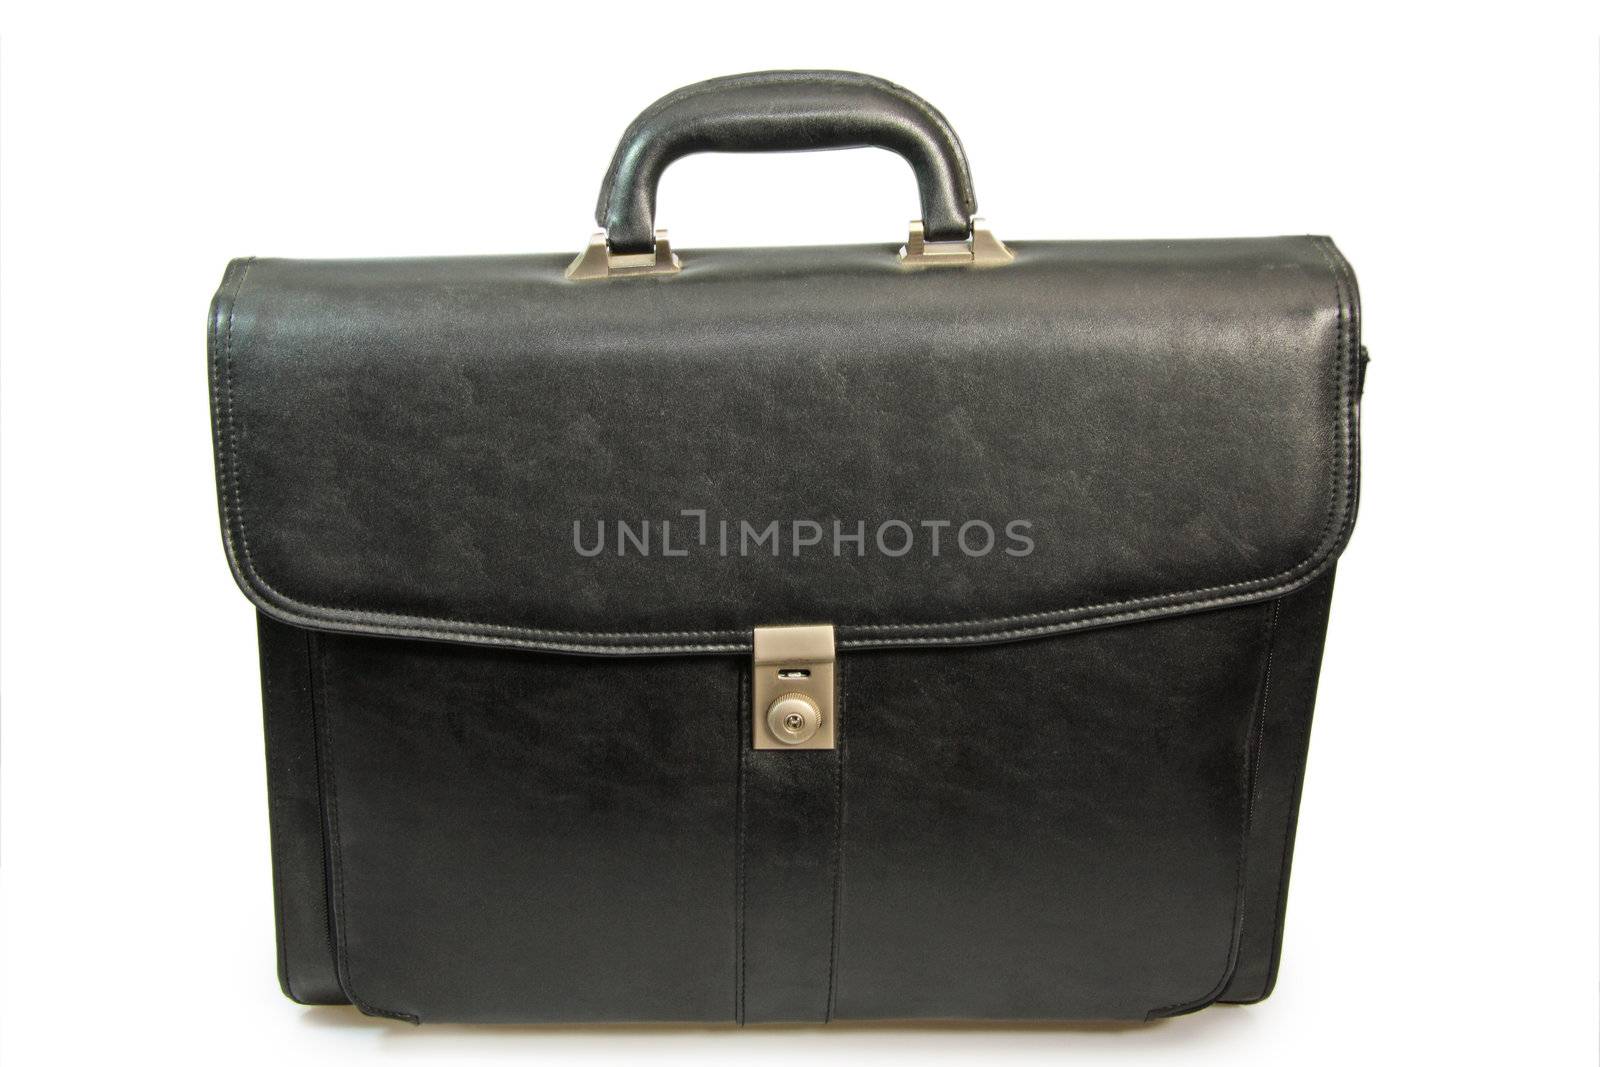 Black briefcase on bright background